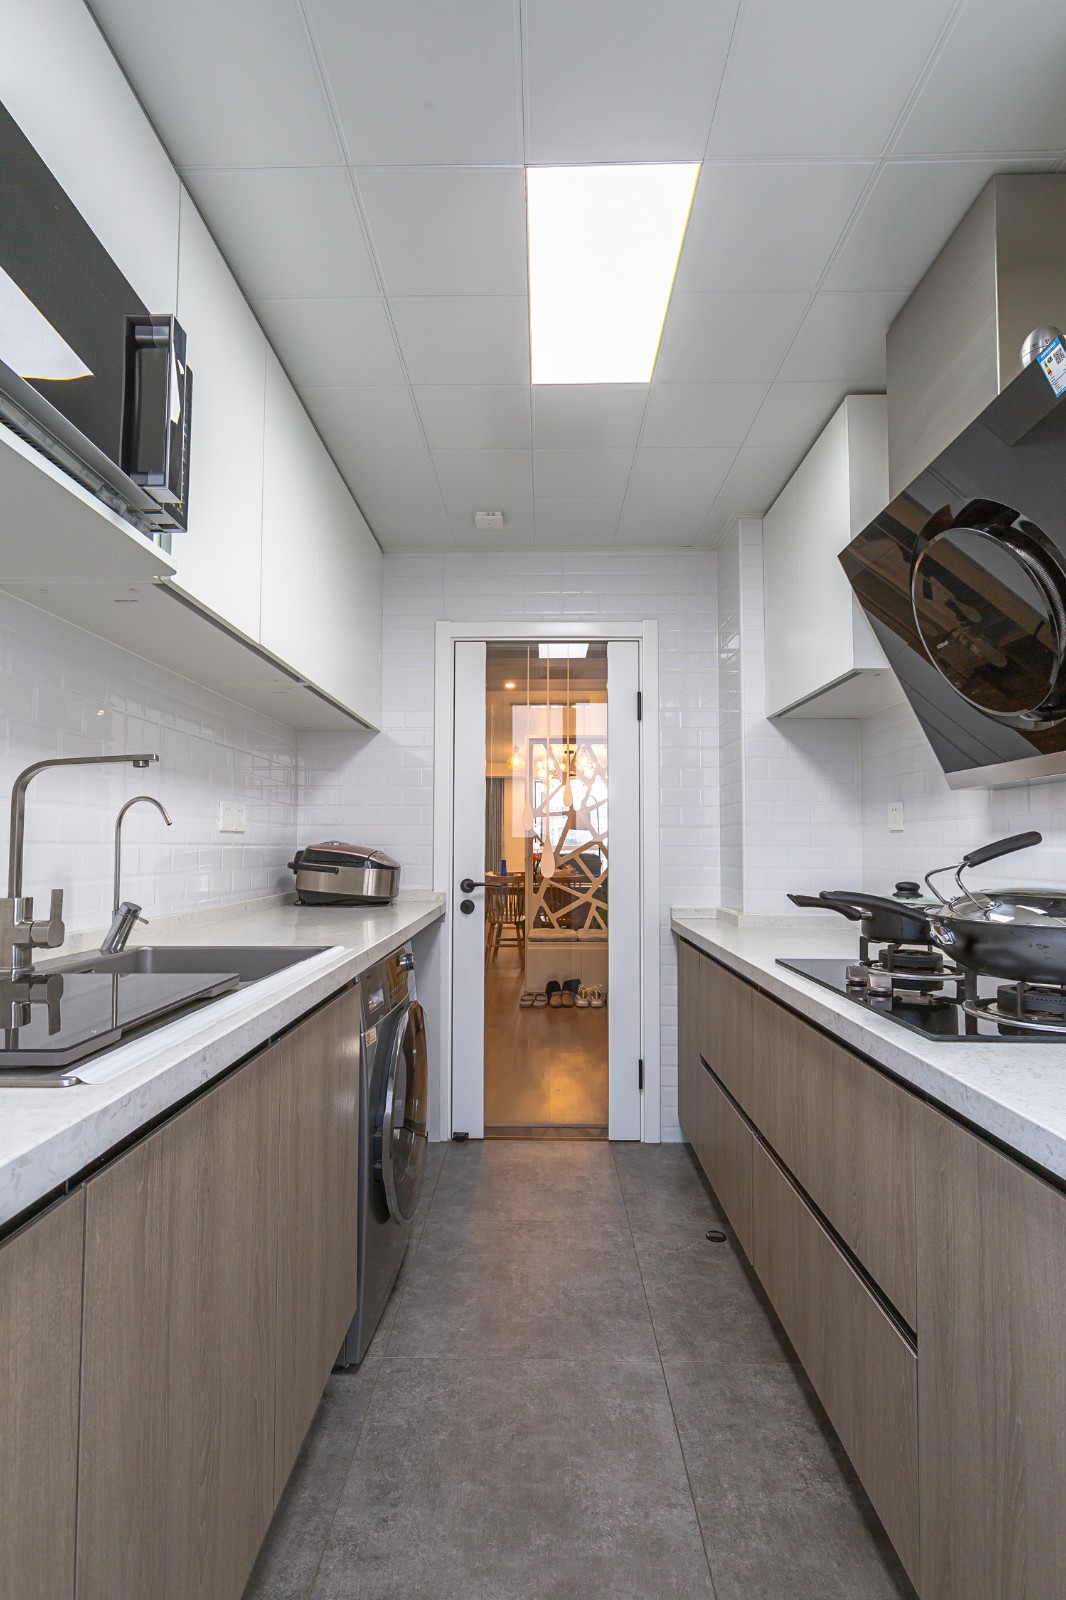 裝修案例現代簡約風格室內裝修效果圖-廚房